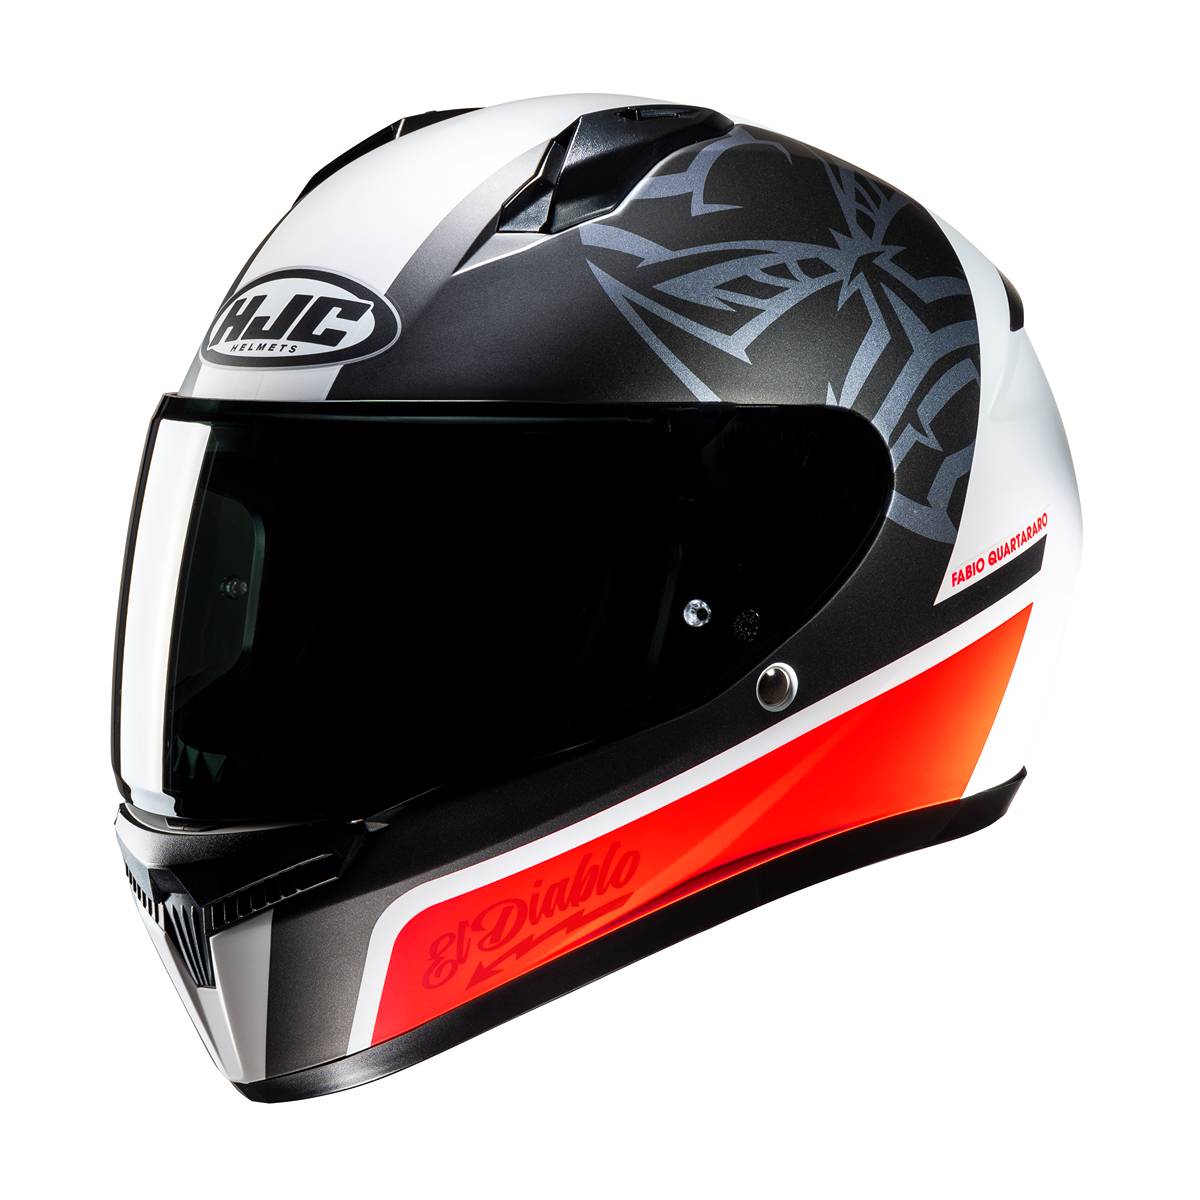 Image of HJC C10 Fabio Quartararo 20 Full Face Helmet White Red Size S ID 8804269437216